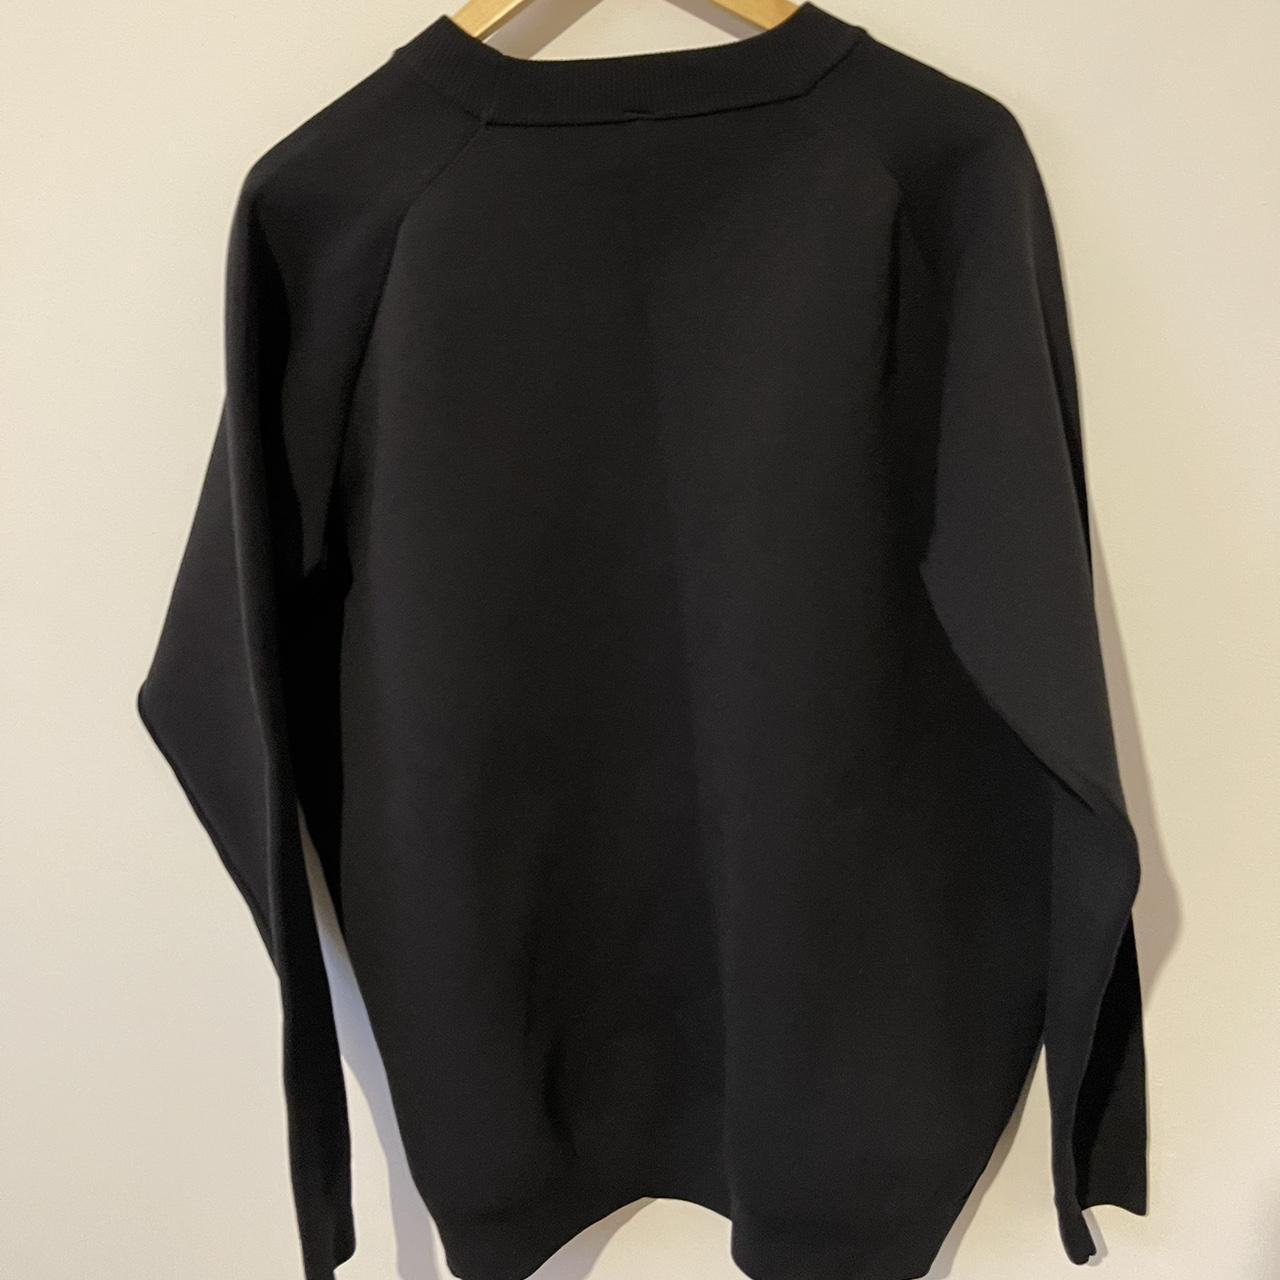 Muji Sweatshirt In Excellent Condition Size... - Depop